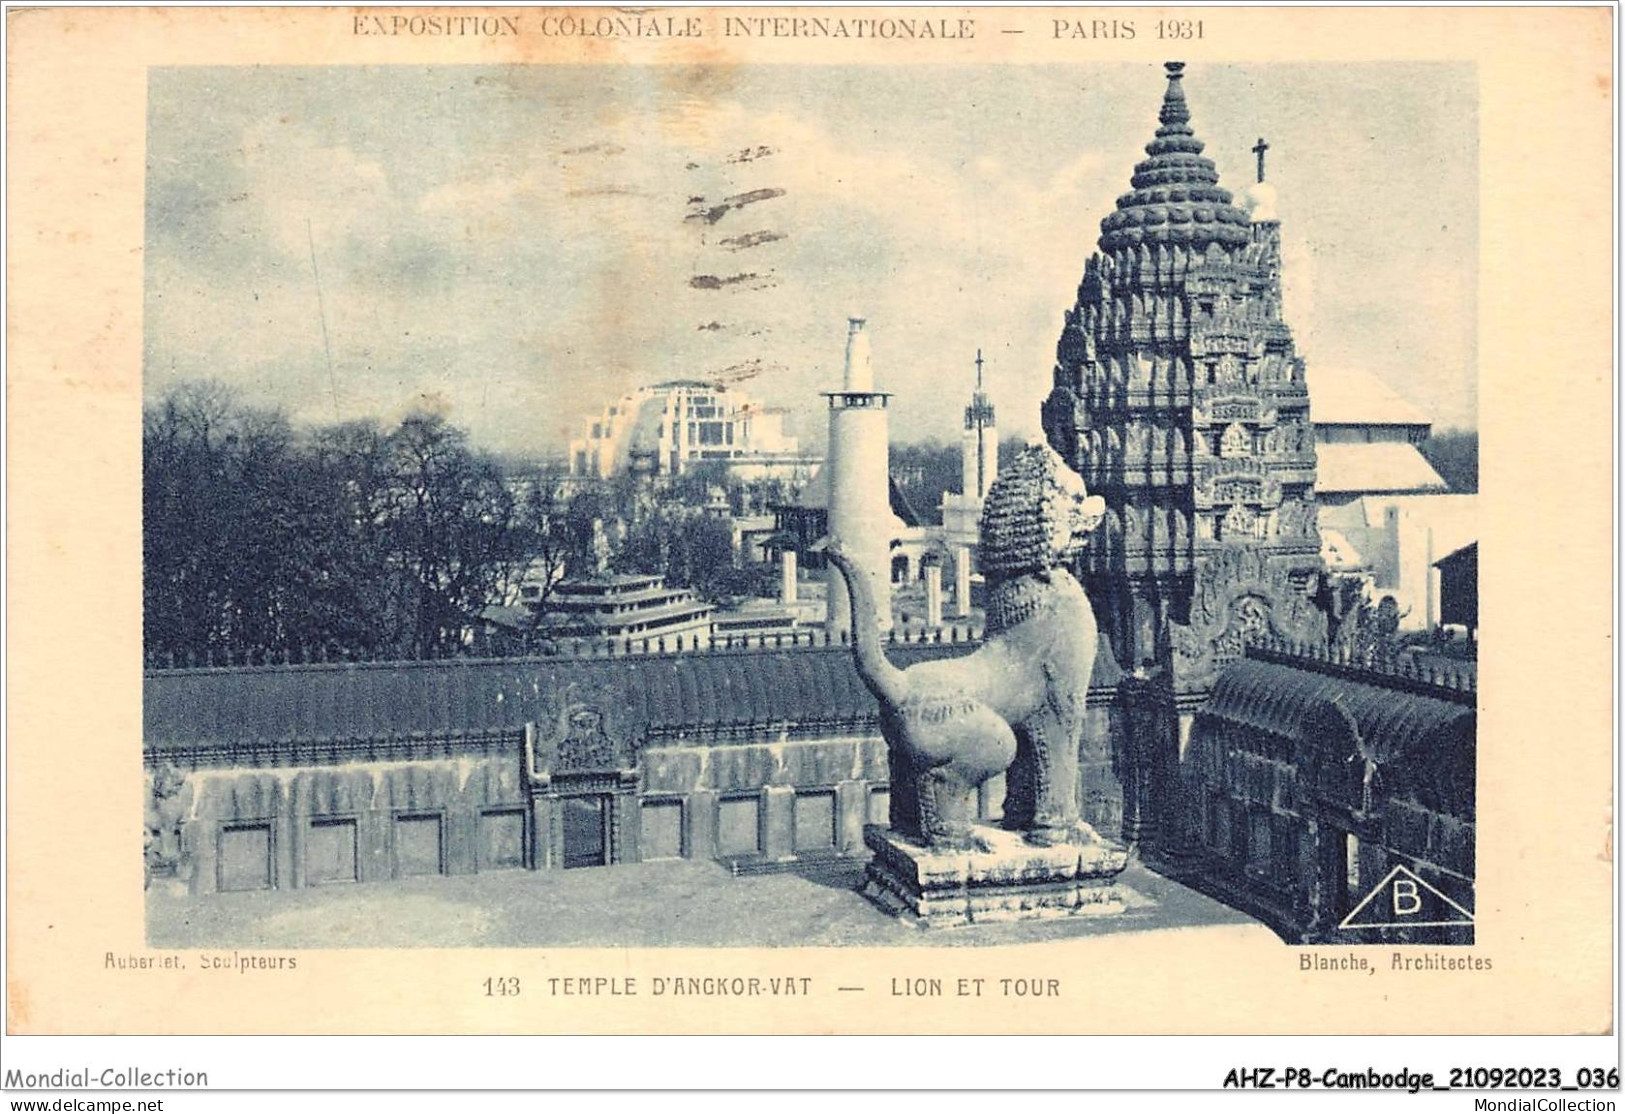 AHZP8-CAMBODGE-0701 - EXPOSITION COLONIALE INTERNATIONALE - PARIS 1931 - TEMPLE D'ANGKOR-VAT - LION ET TOUR - Cambodia